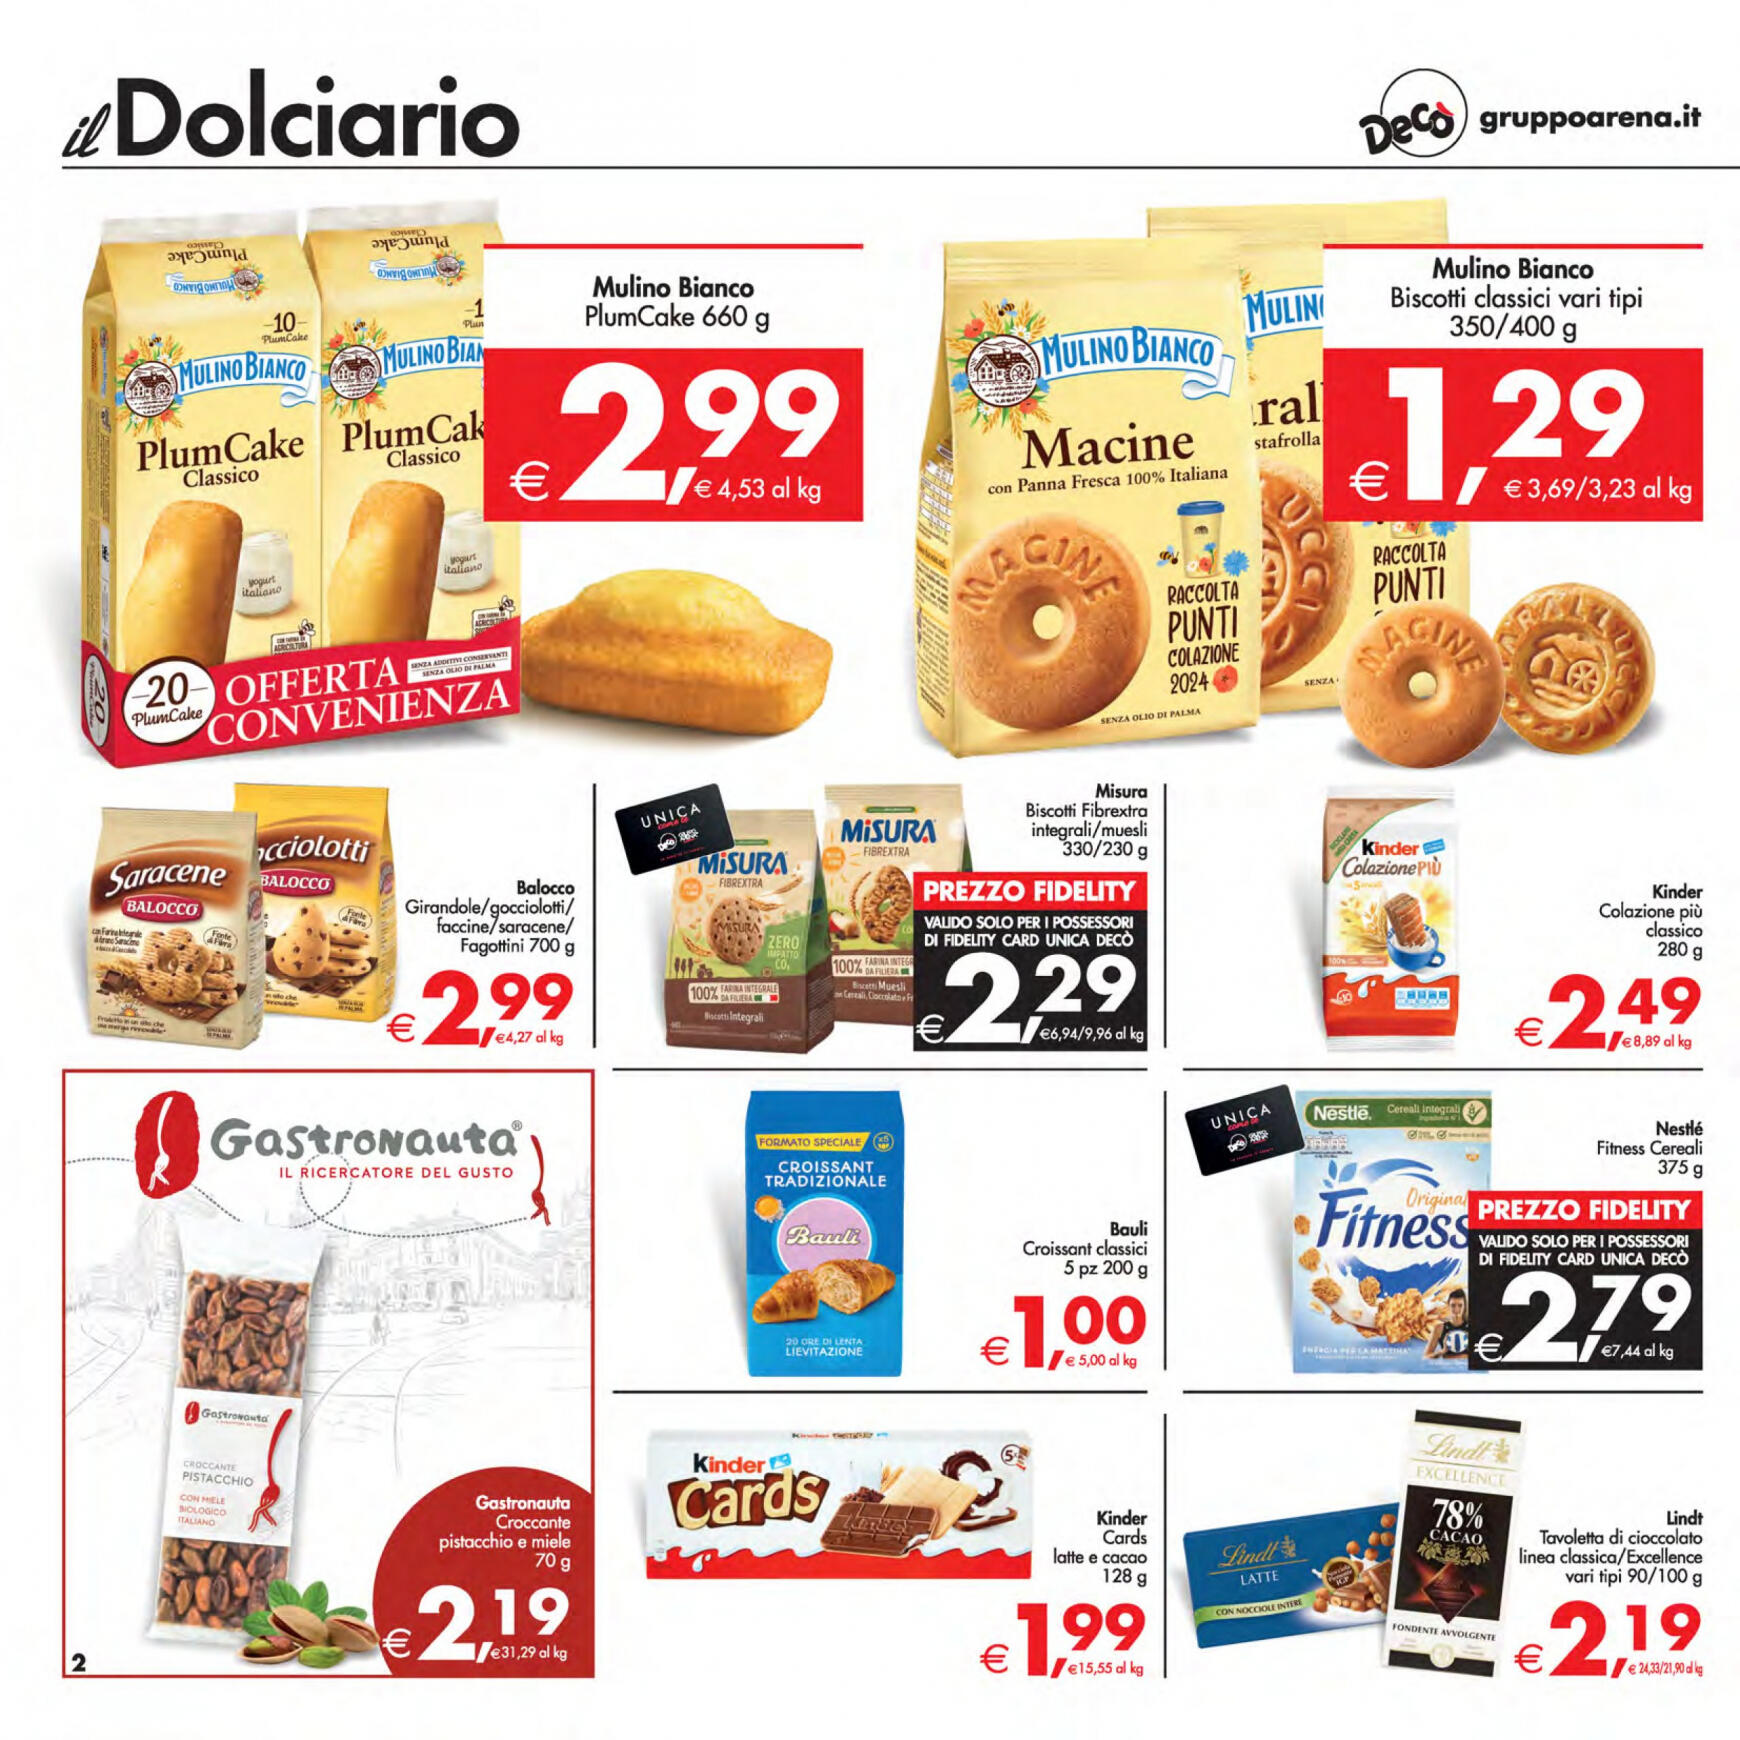 deco - Nuovo volantino Decò - Supermercati/Maxistore/Local 23.04. - 02.05. - page: 2